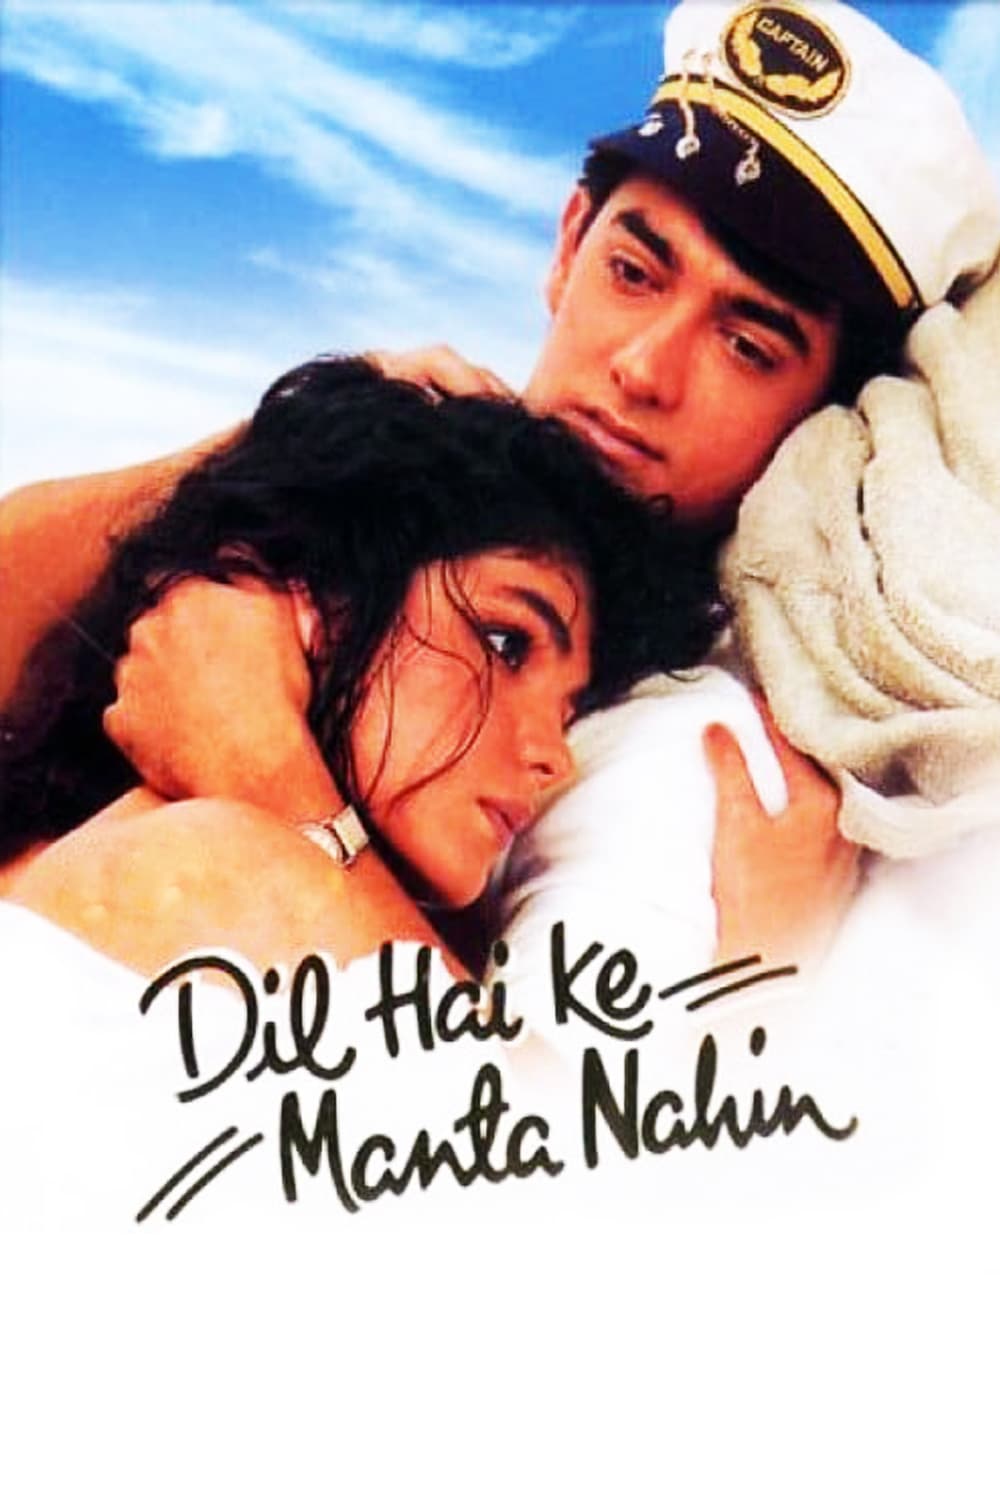 Poster for the movie "Dil Hai Ke Manta Nahin"